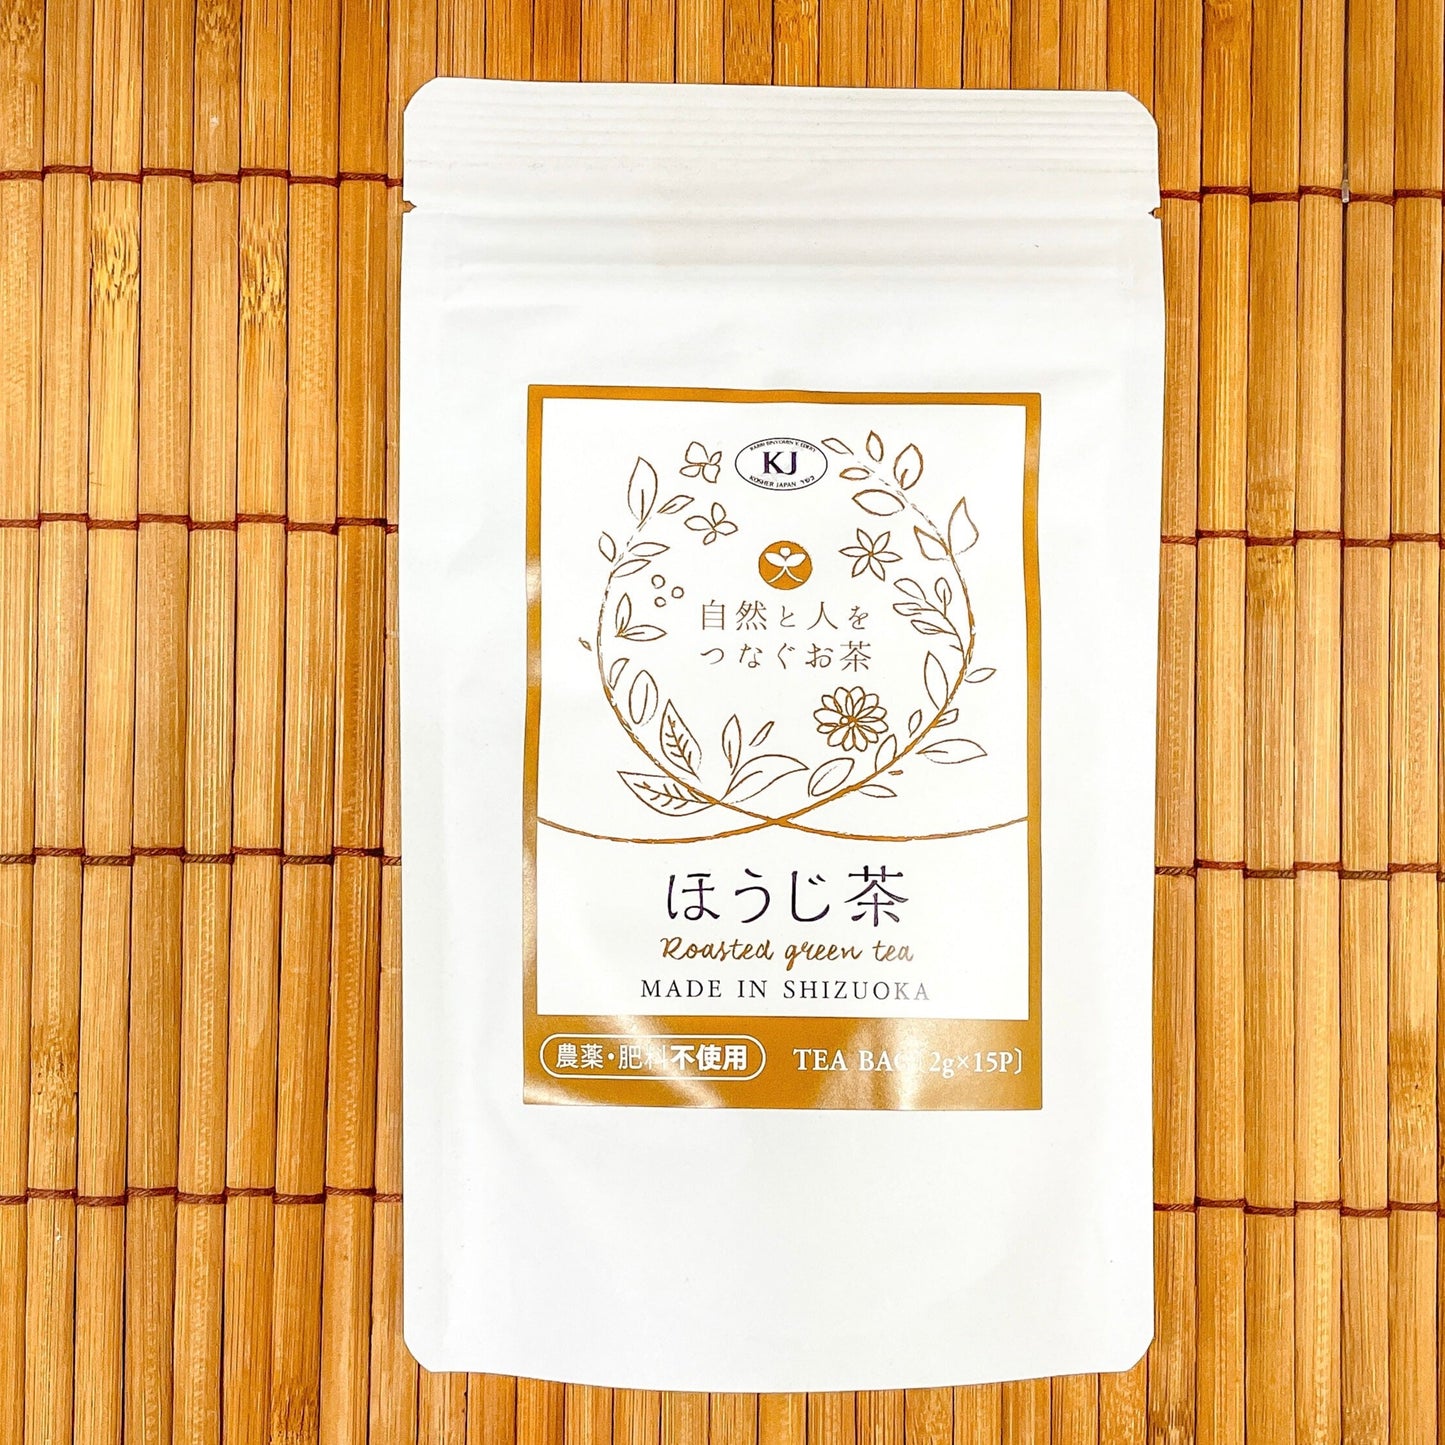 自然と人をつなぐお茶 ほうじ茶 TEA BAG [2g X 15p] 【静岡県産】【農薬・肥料不使用】【送料無料】